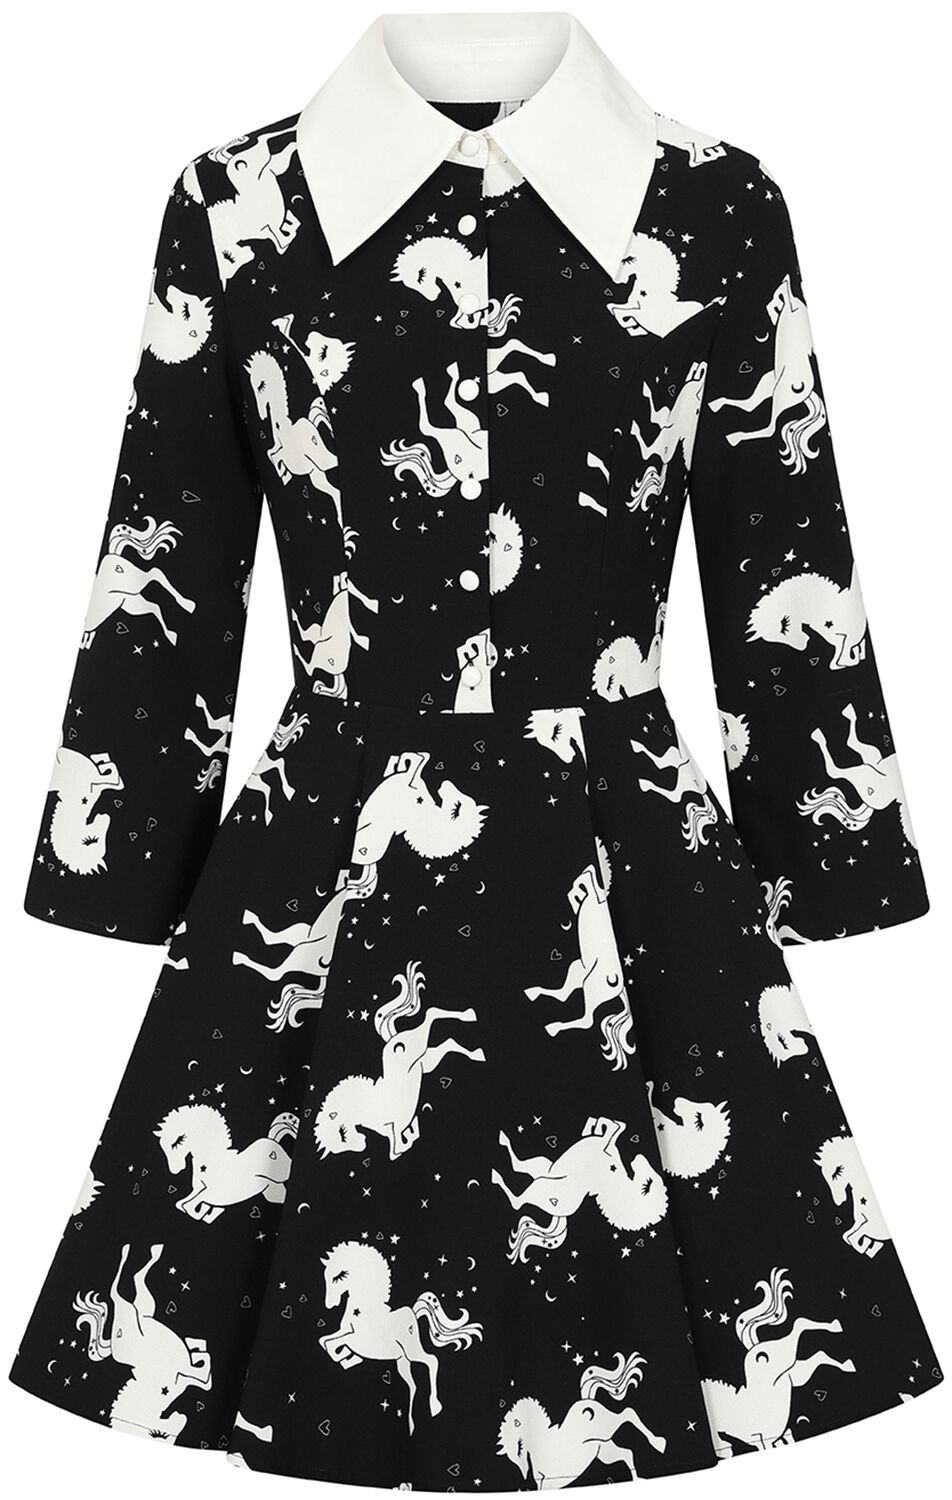 Robe courte Rockabilly de Hell Bunny - Sullivan Mini Dress - XS - pour Femme - noir/blanc